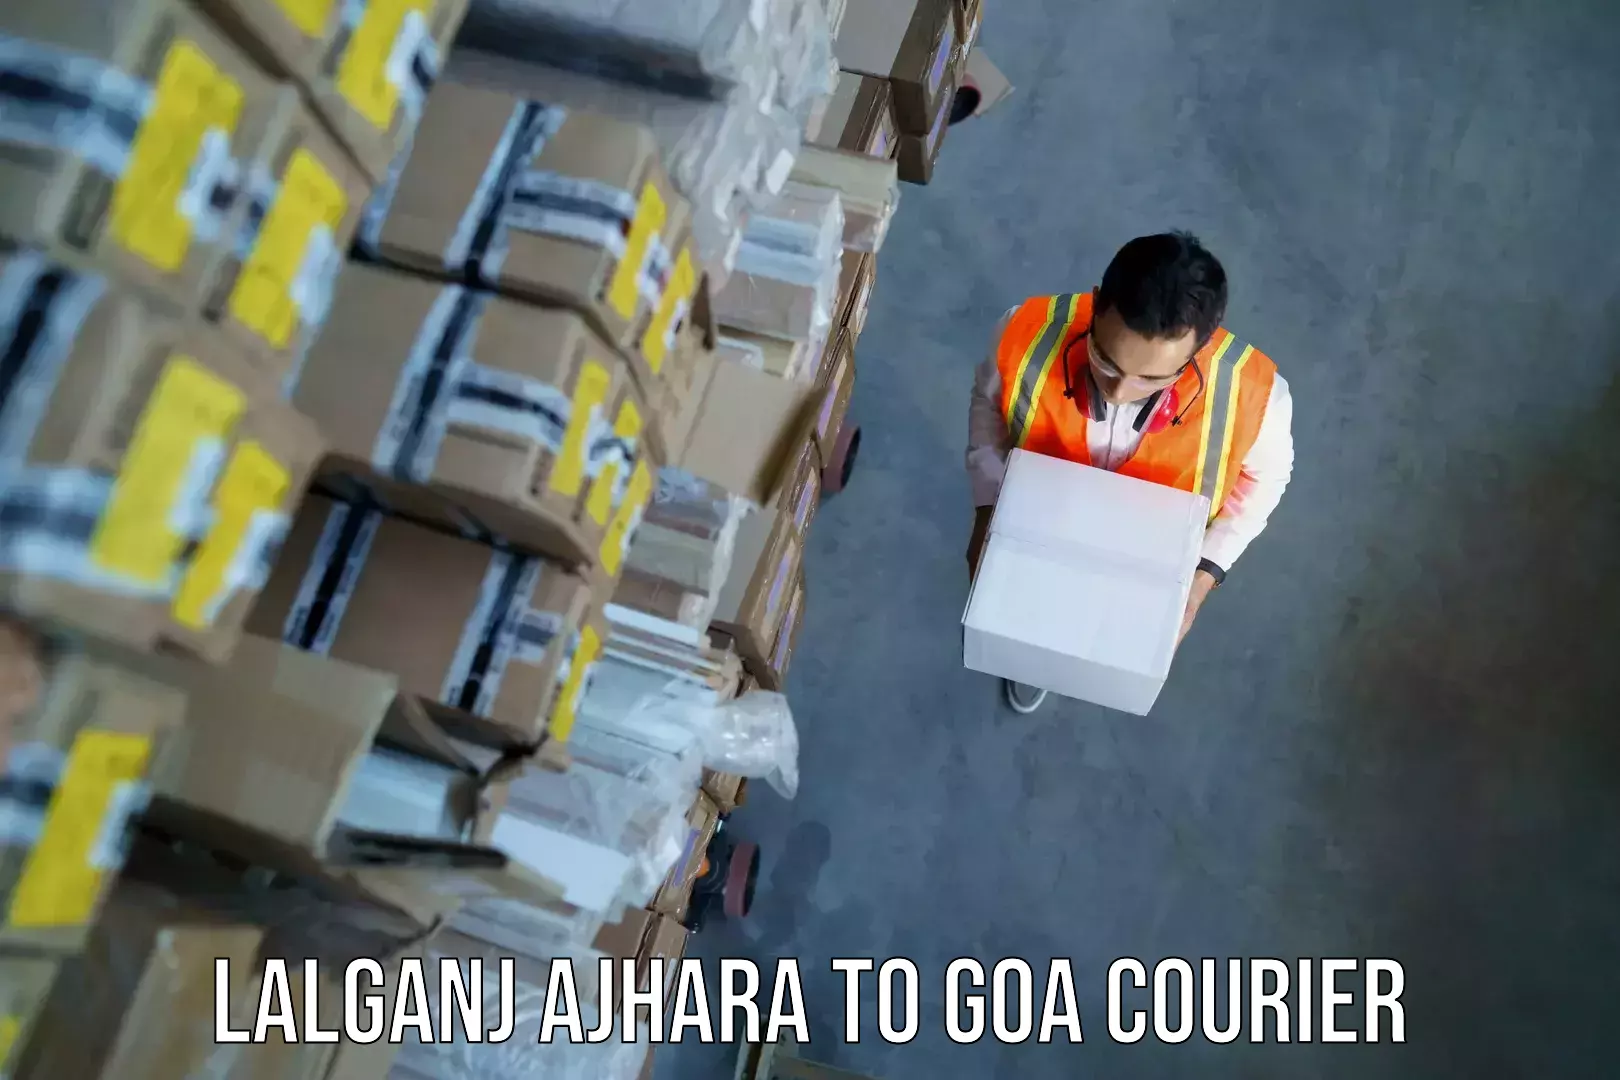 Automated luggage transport Lalganj Ajhara to Goa